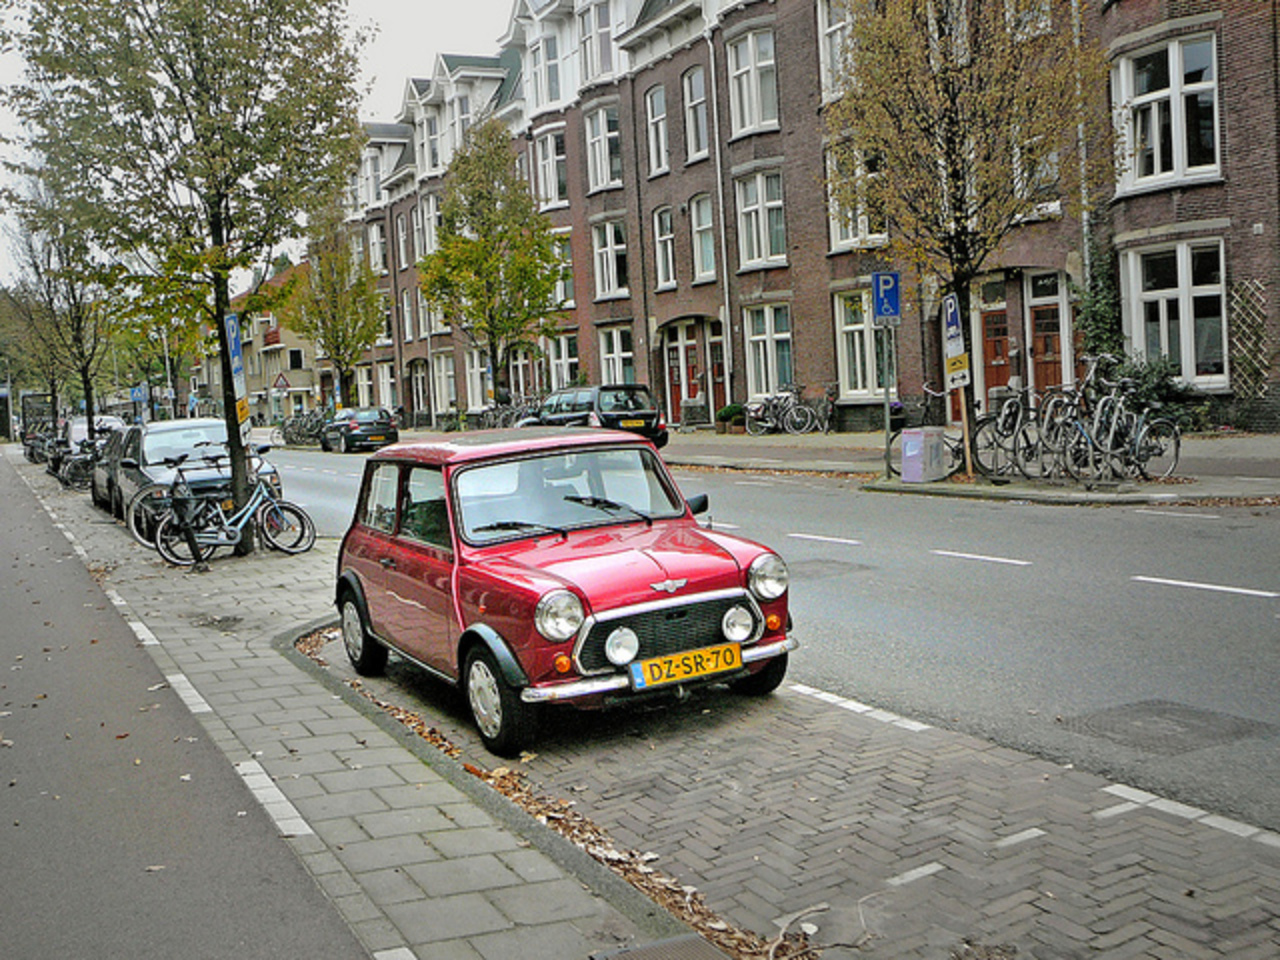 Mini 1300, 1992, Amsterdam, Watergraafsmeer, 10-2010 | Flickr ...